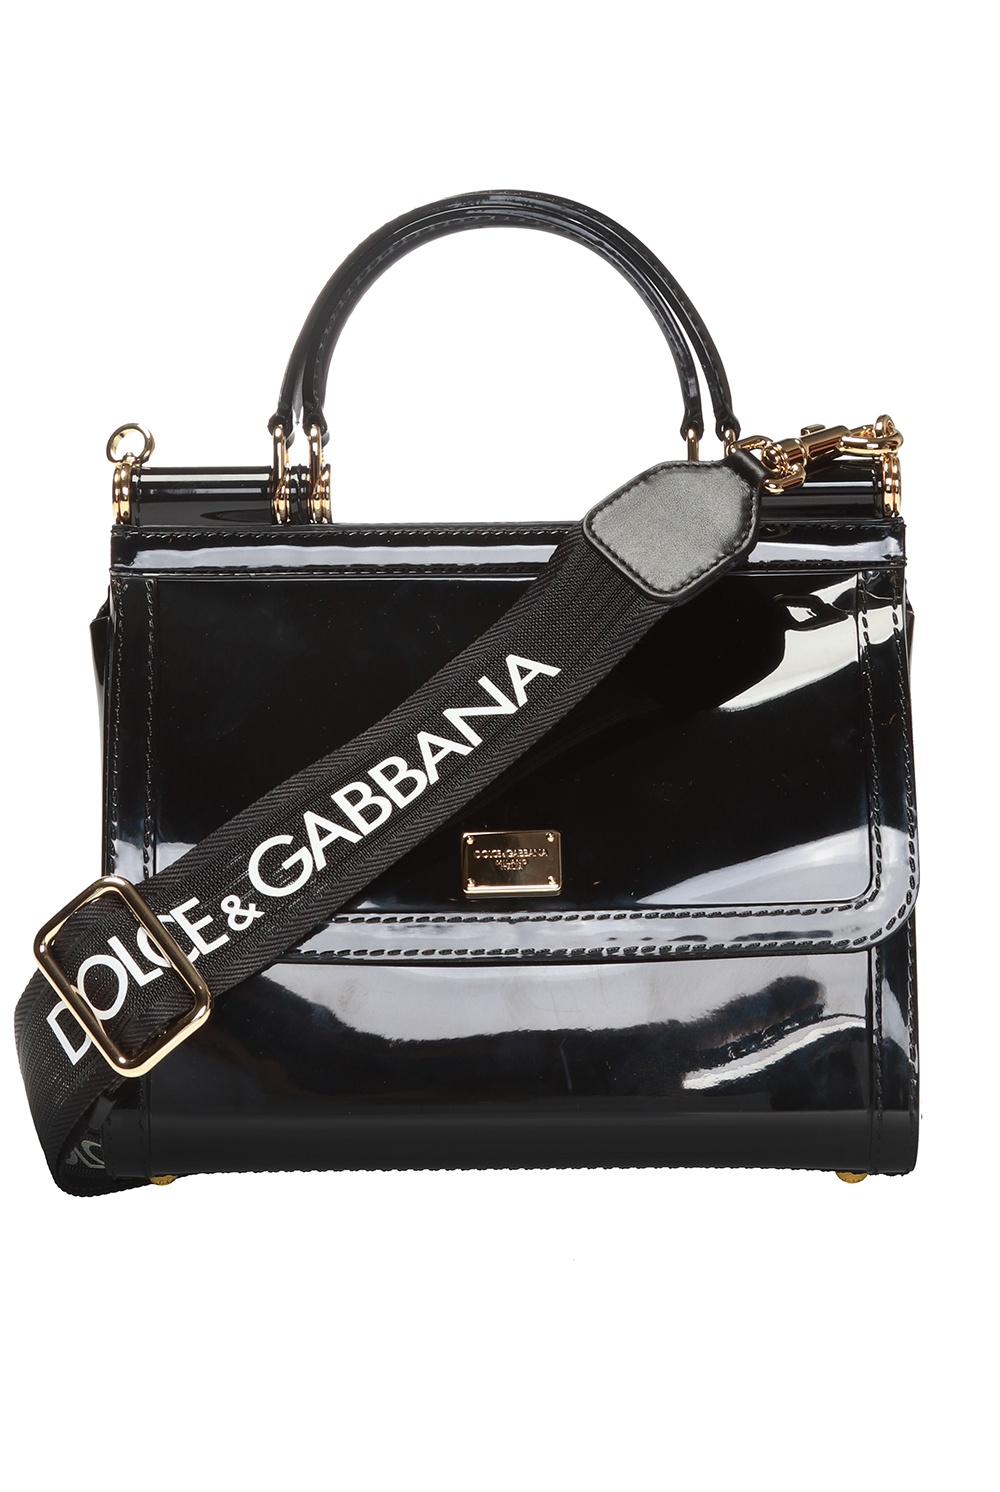 Black 'Sicily' shoulder bag Dolce & Gabbana - Vitkac France